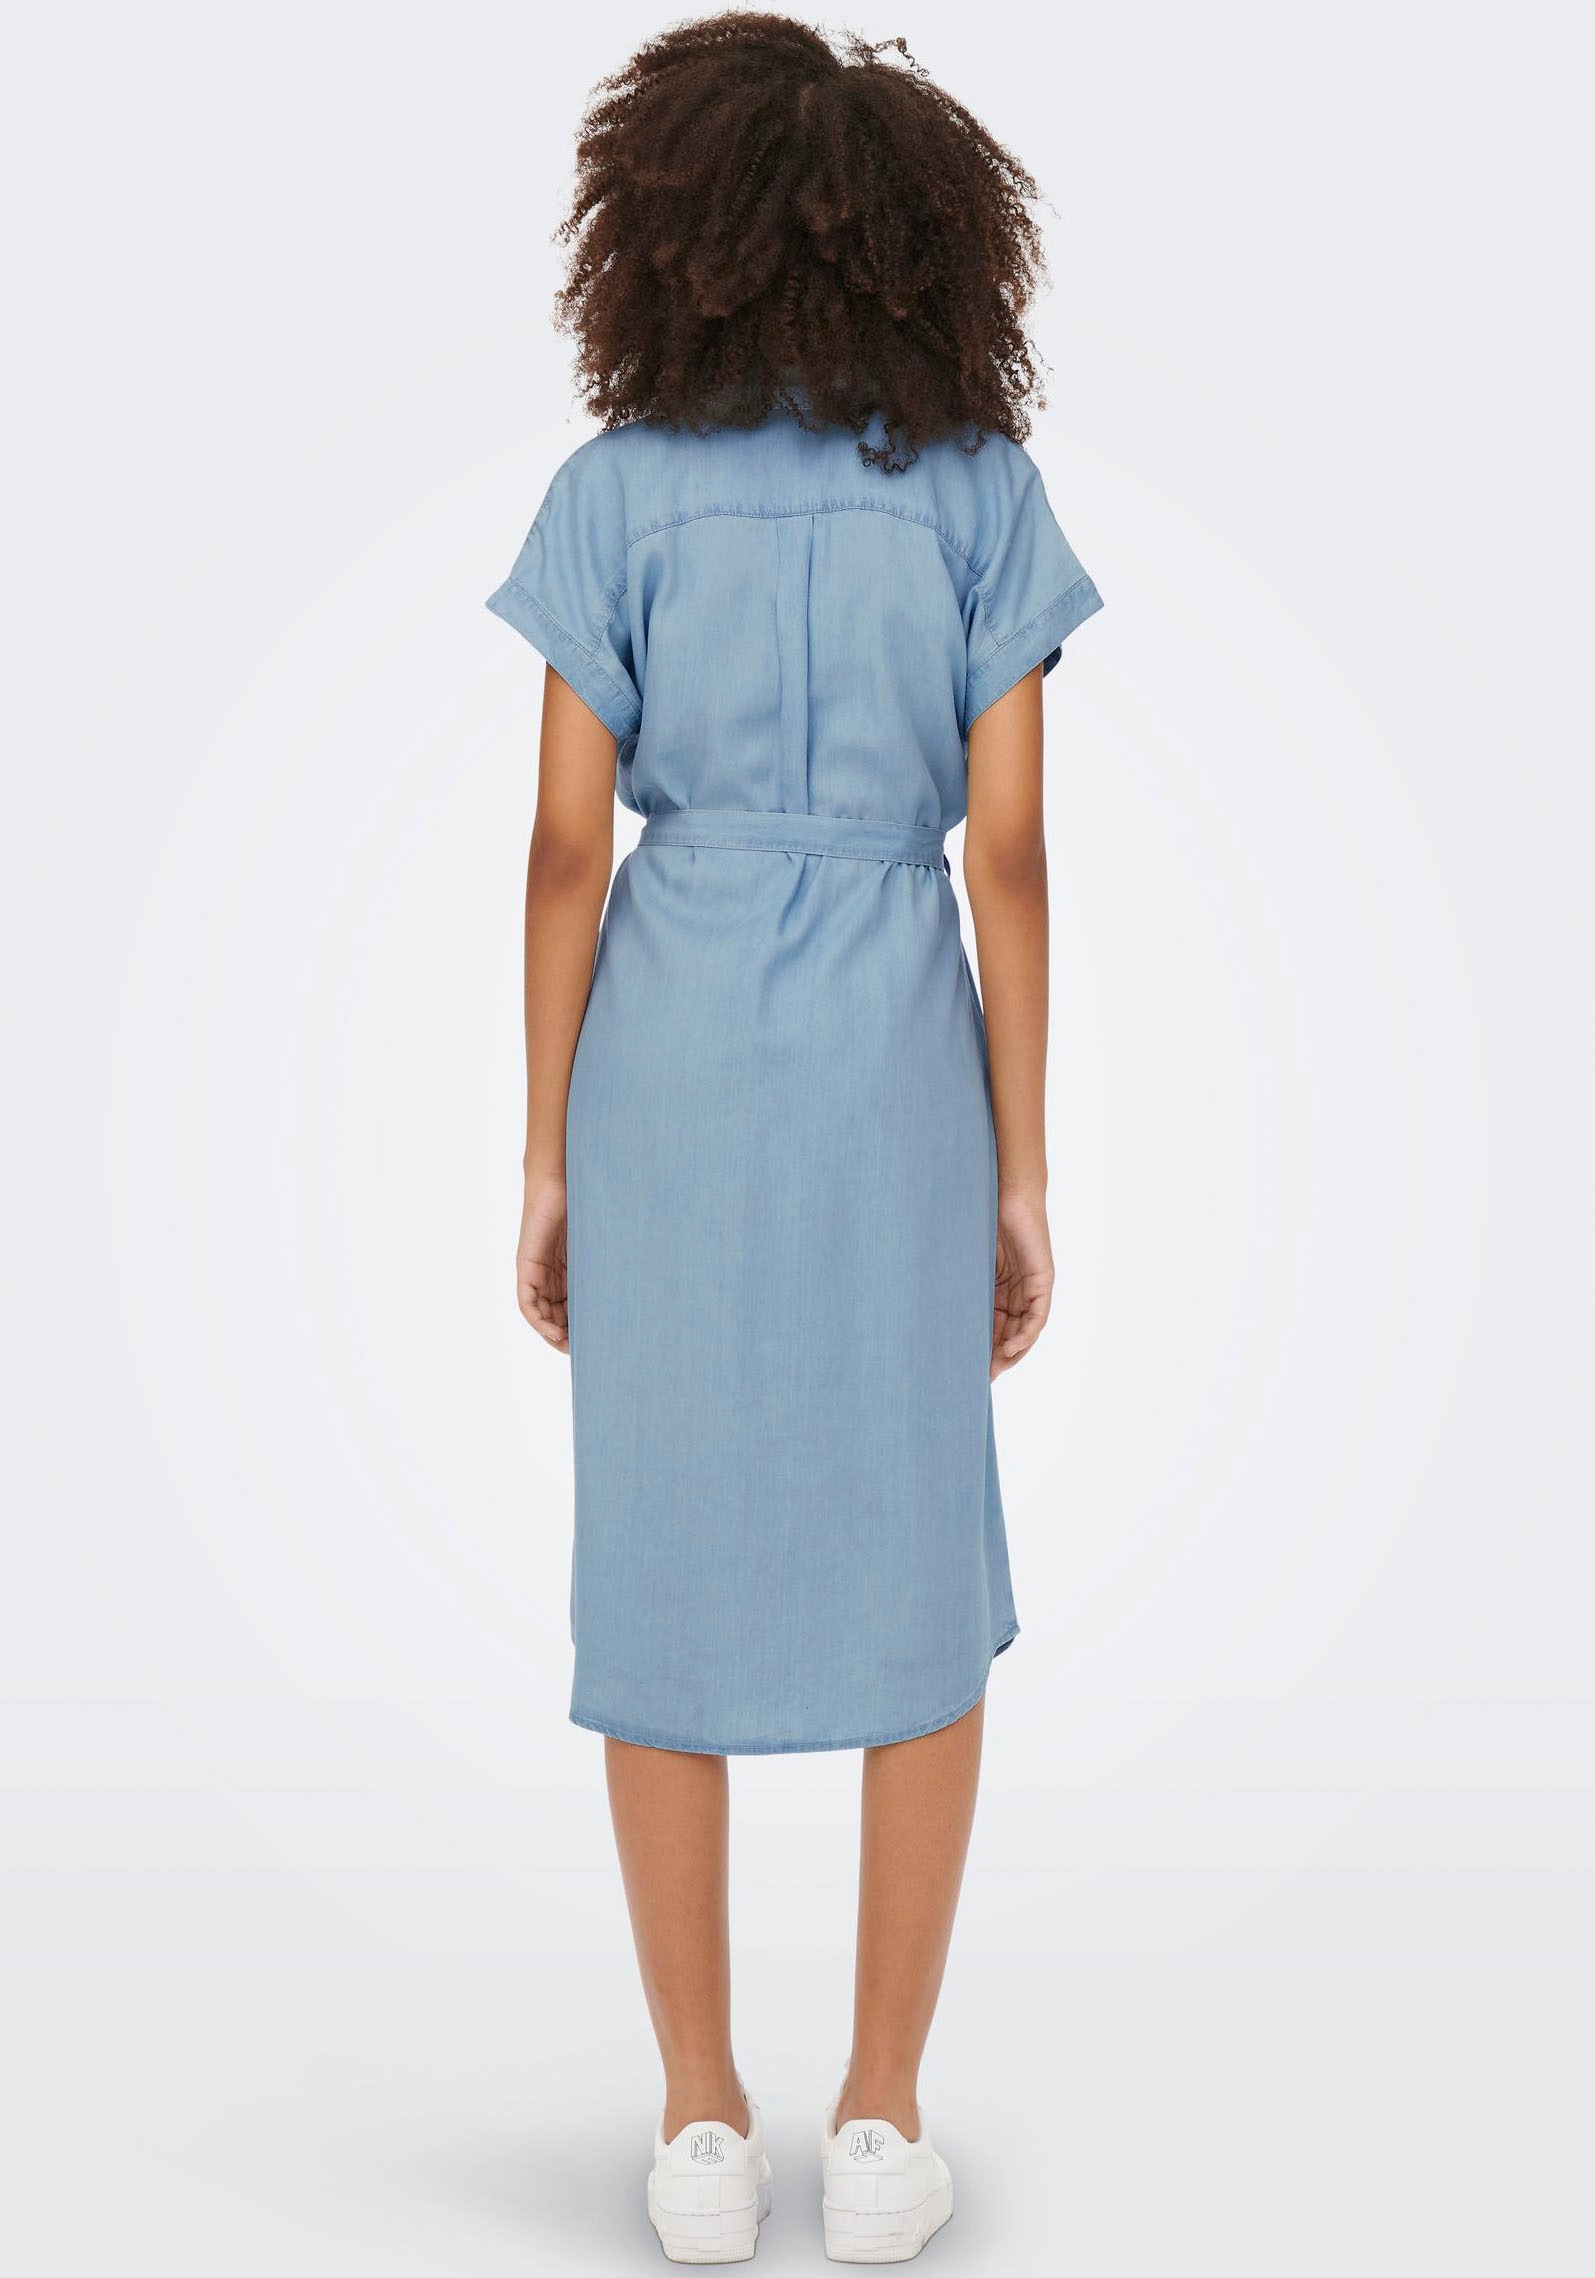 DRESS« OTTO Jeanskleid HANNOVER kaufen ONLY SS DNM SH Online im Shop »ONLPEMA